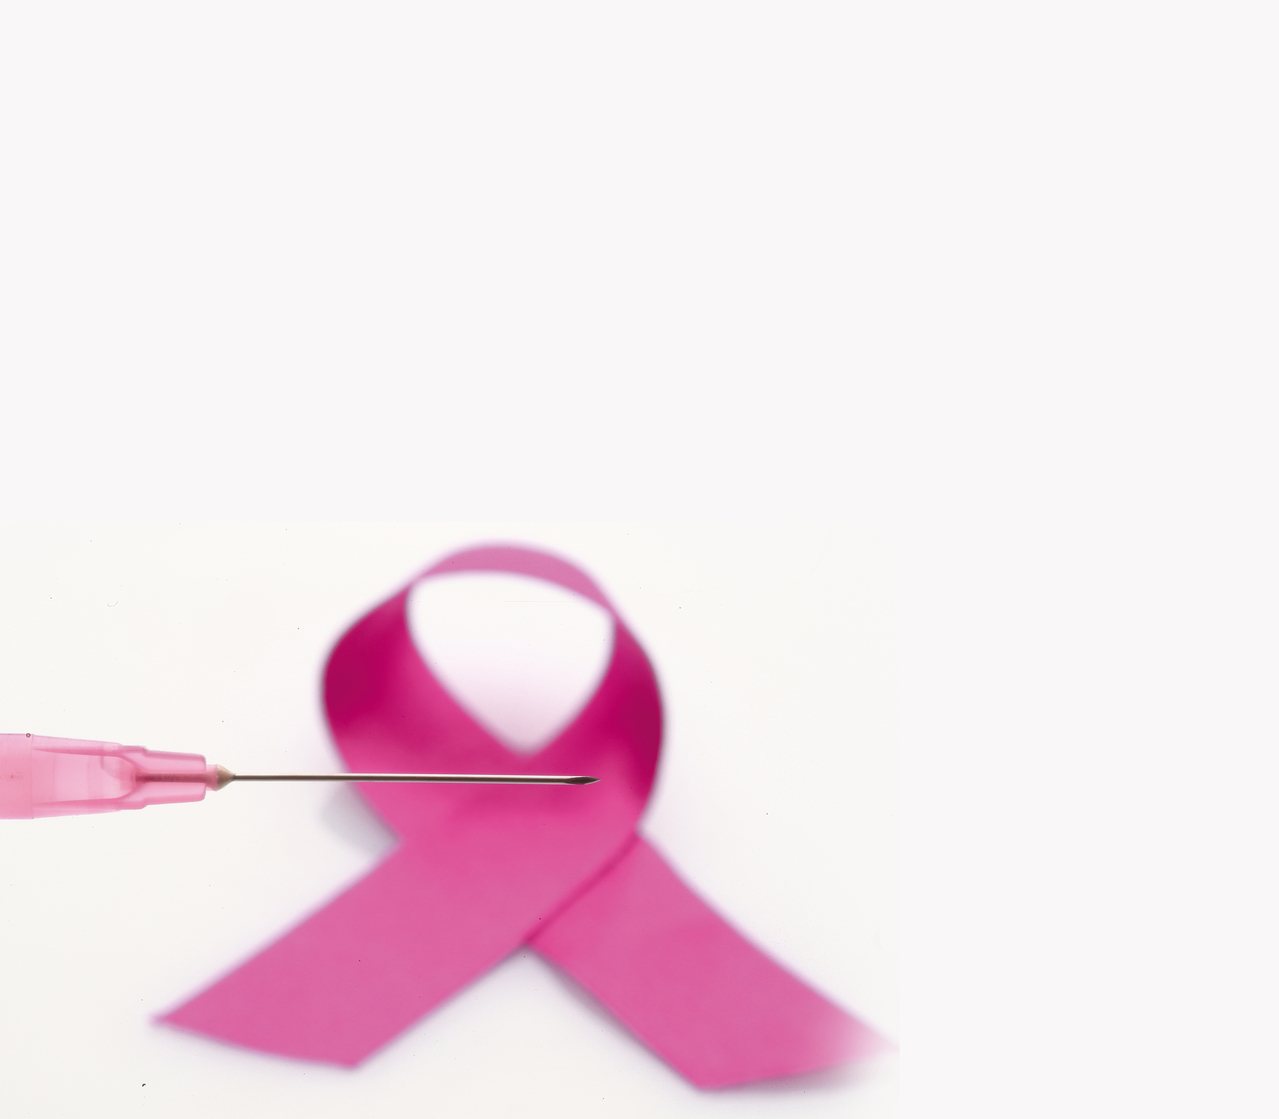 根據台灣癌症登記資料庫，乳癌是女性癌症第一位、死亡第四位。尤其台灣乳癌好發年齡比歐美年輕10至15歲。